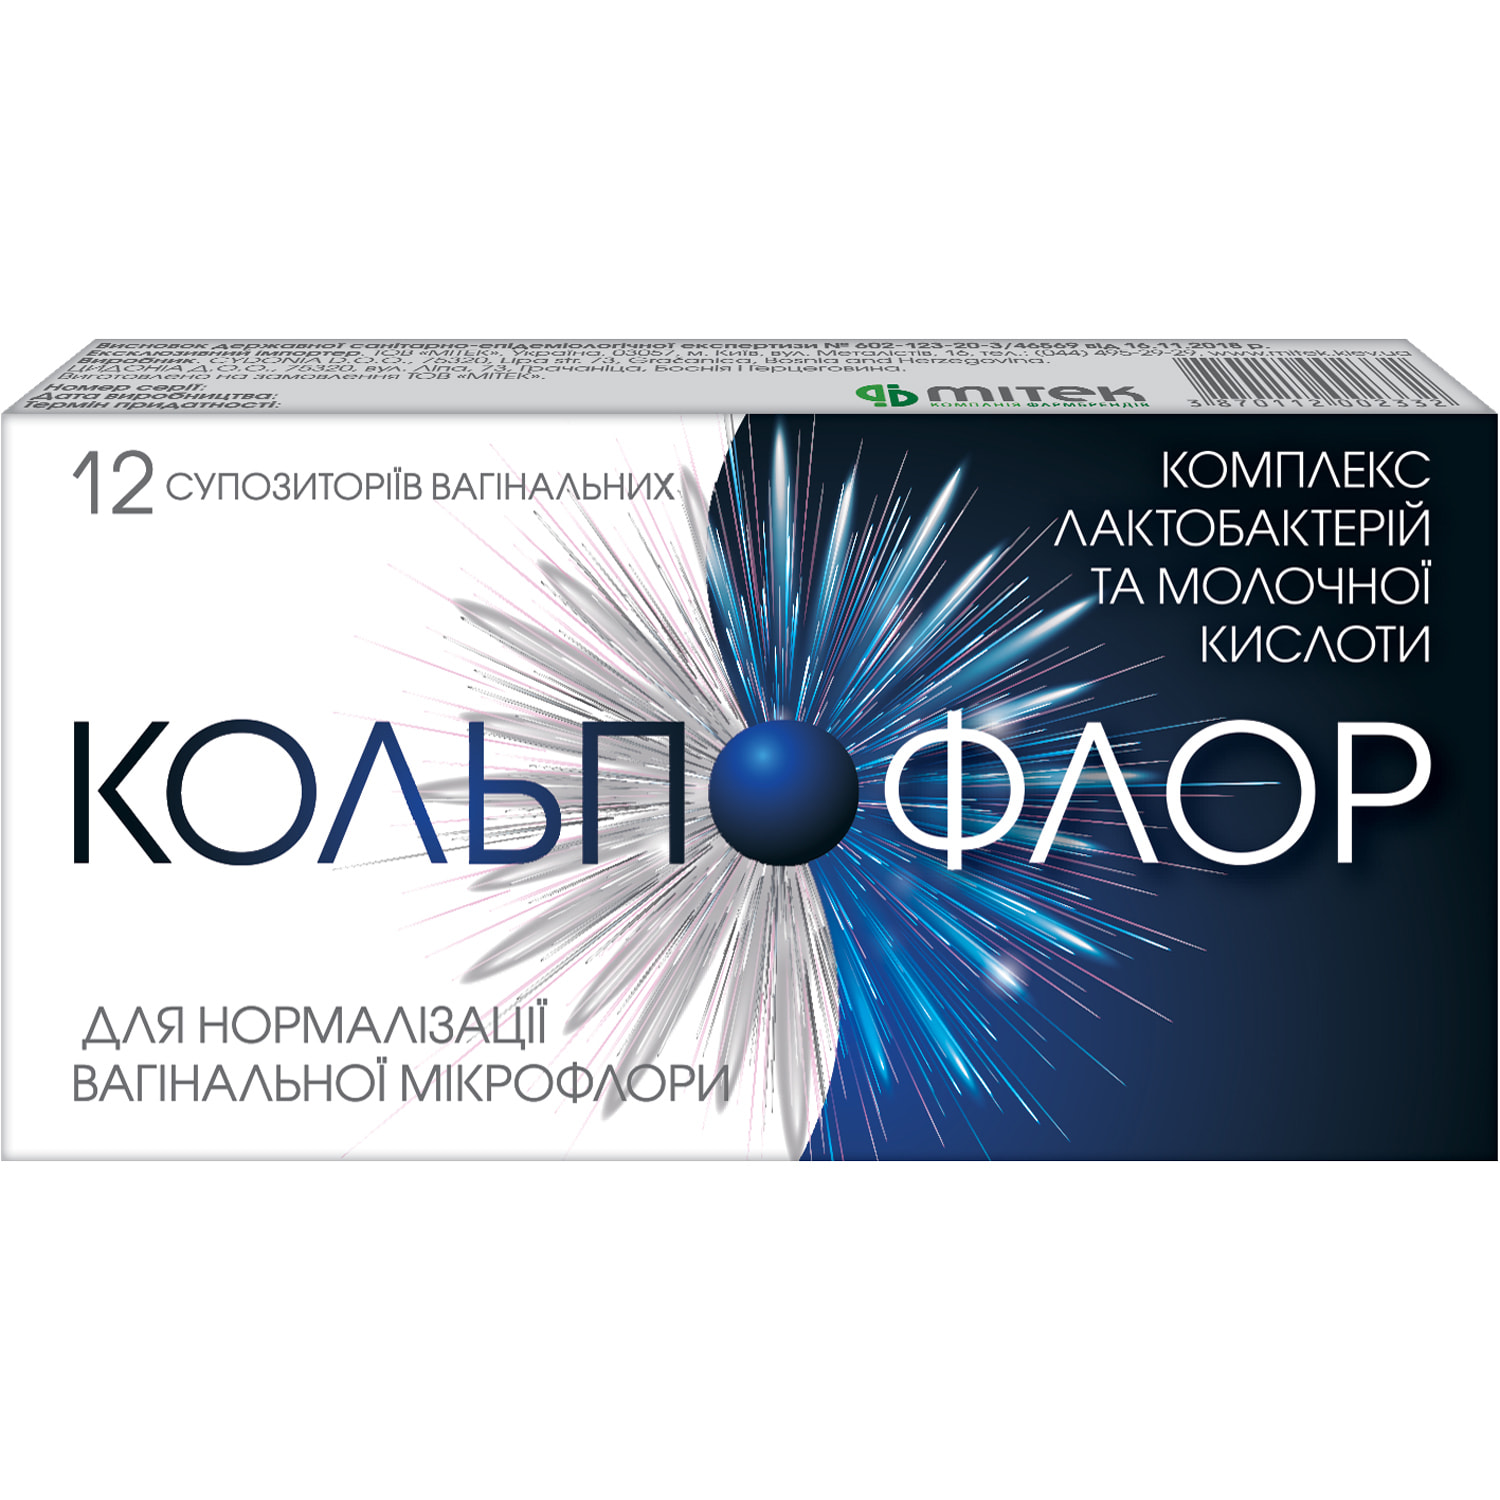 Kgoal Тренажер Кегеля для женщин Kegel simulator — купить в Москве